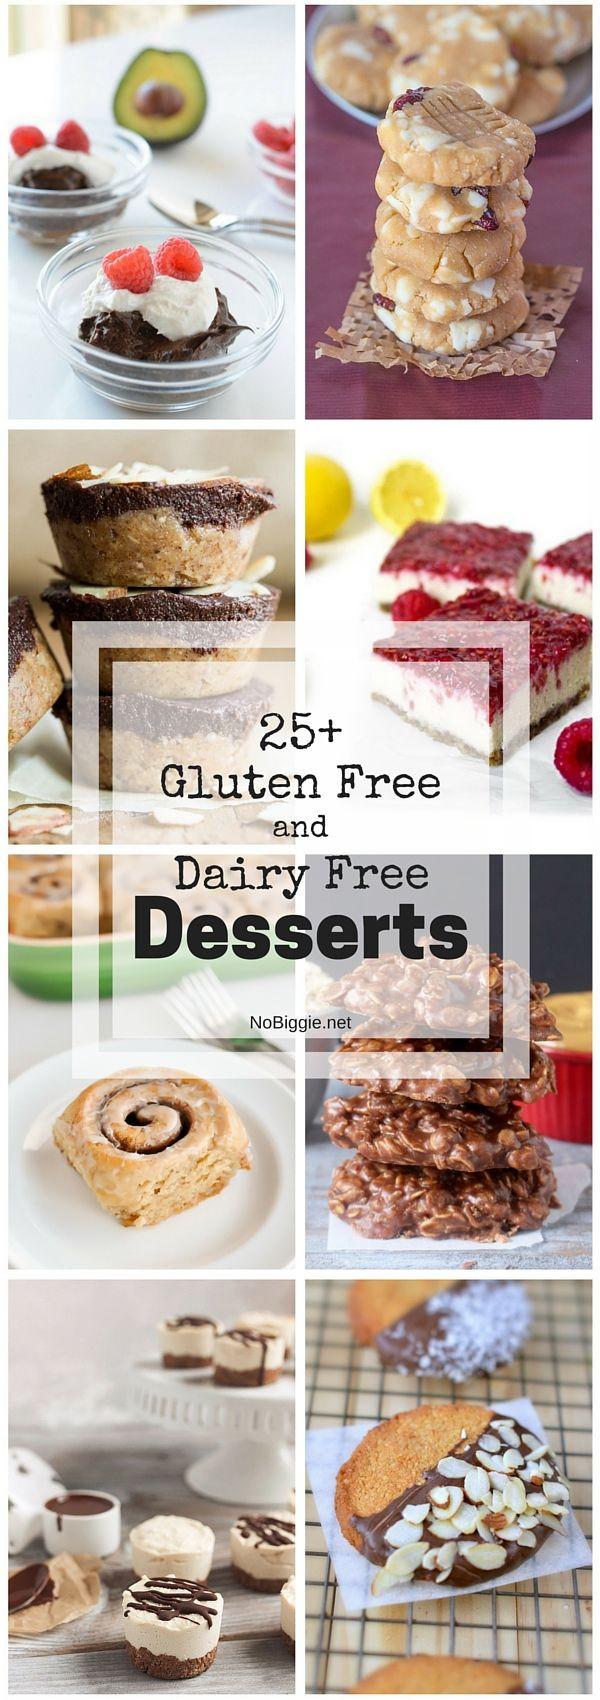 Gluten Free Dairy Free Nut Free Desserts
 17 Best images about Gluten Free Dairy Free Soy Free